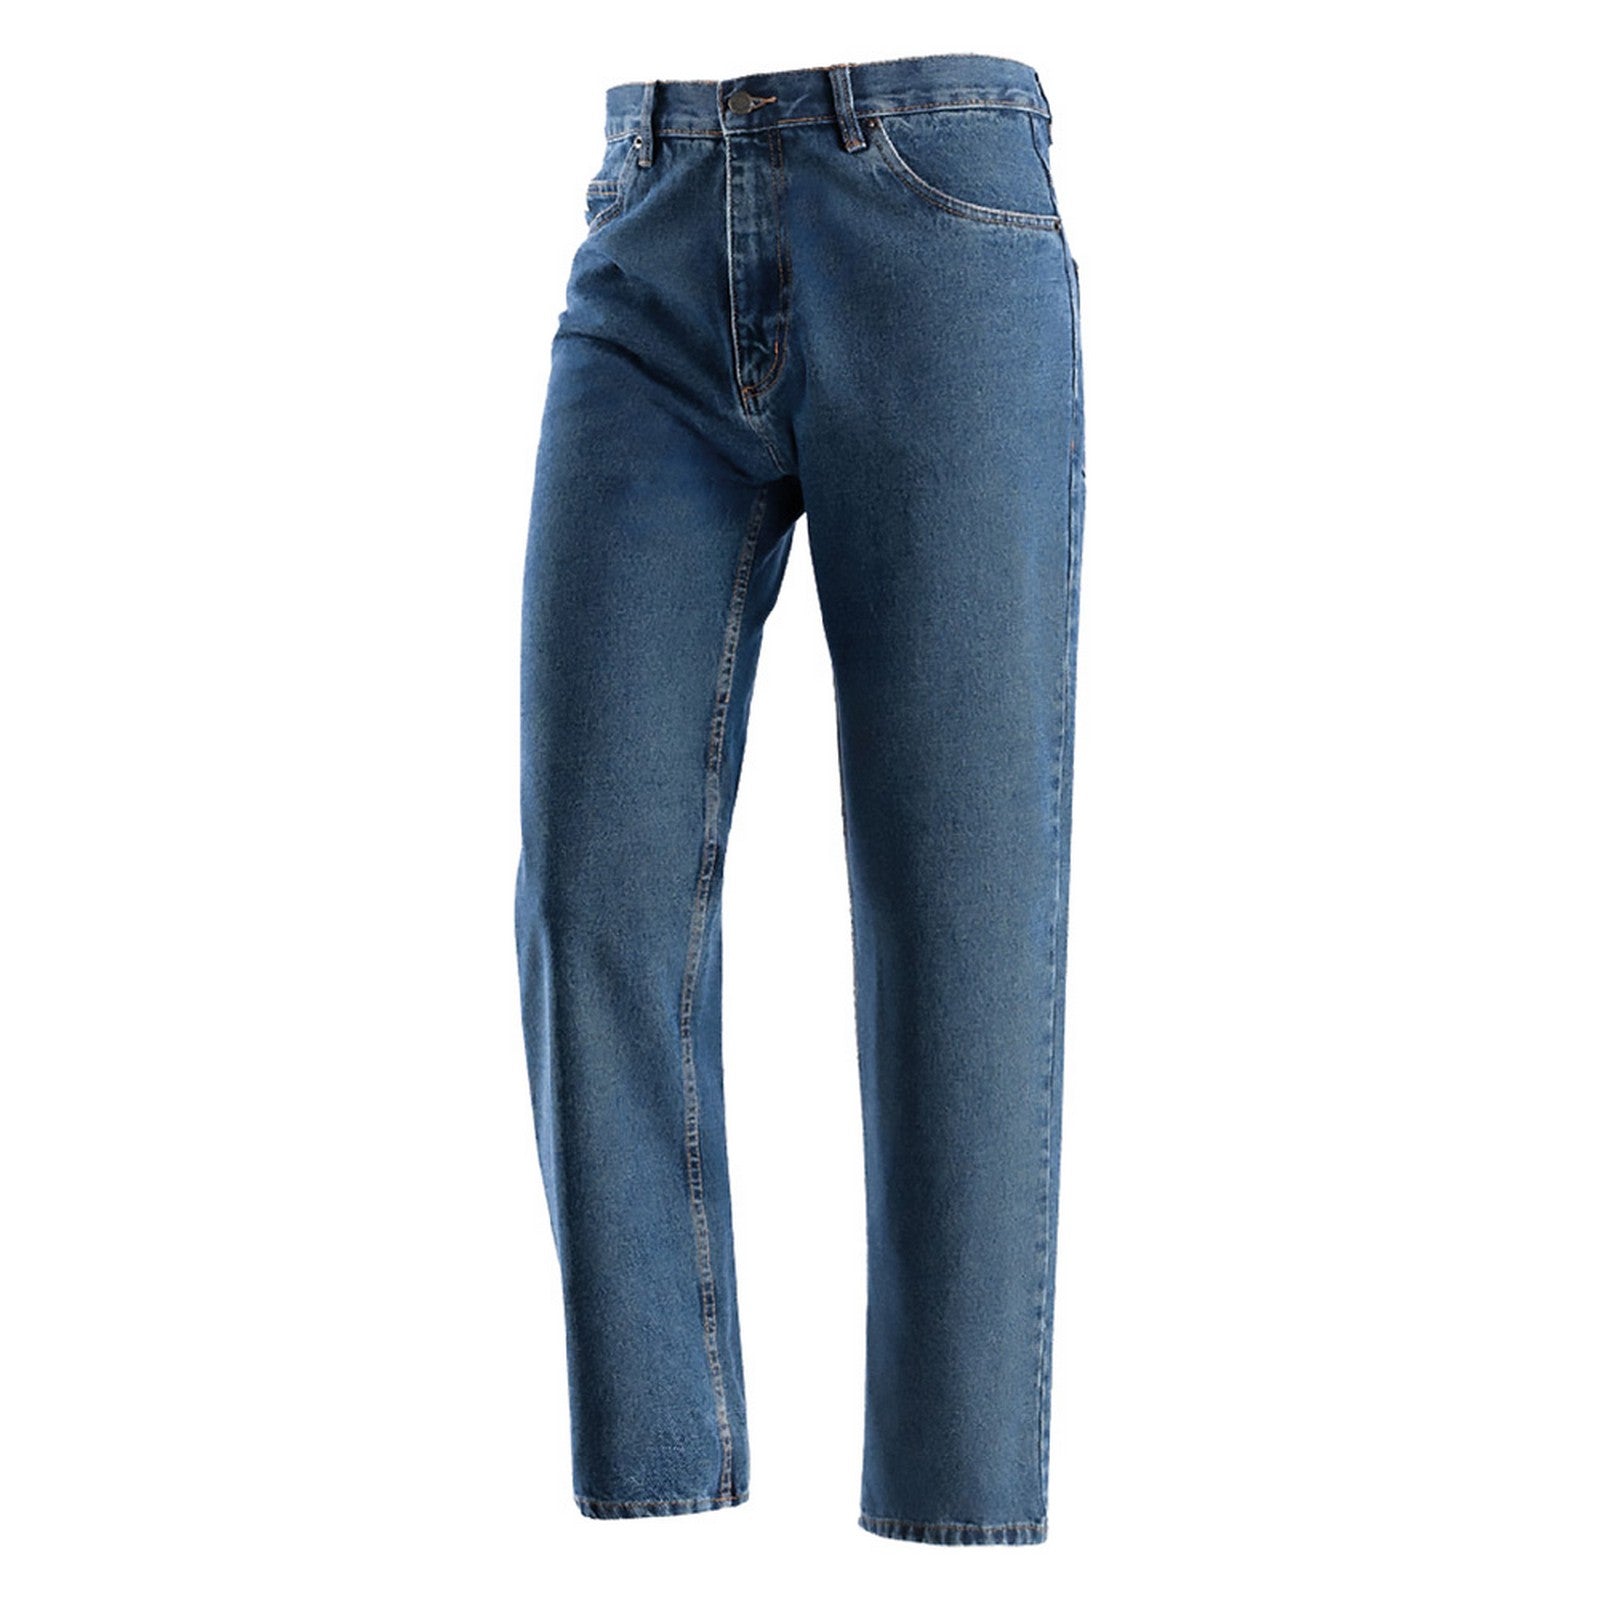 Jeans Da Lavoro 'Denim' Taglia 48 colore Blu